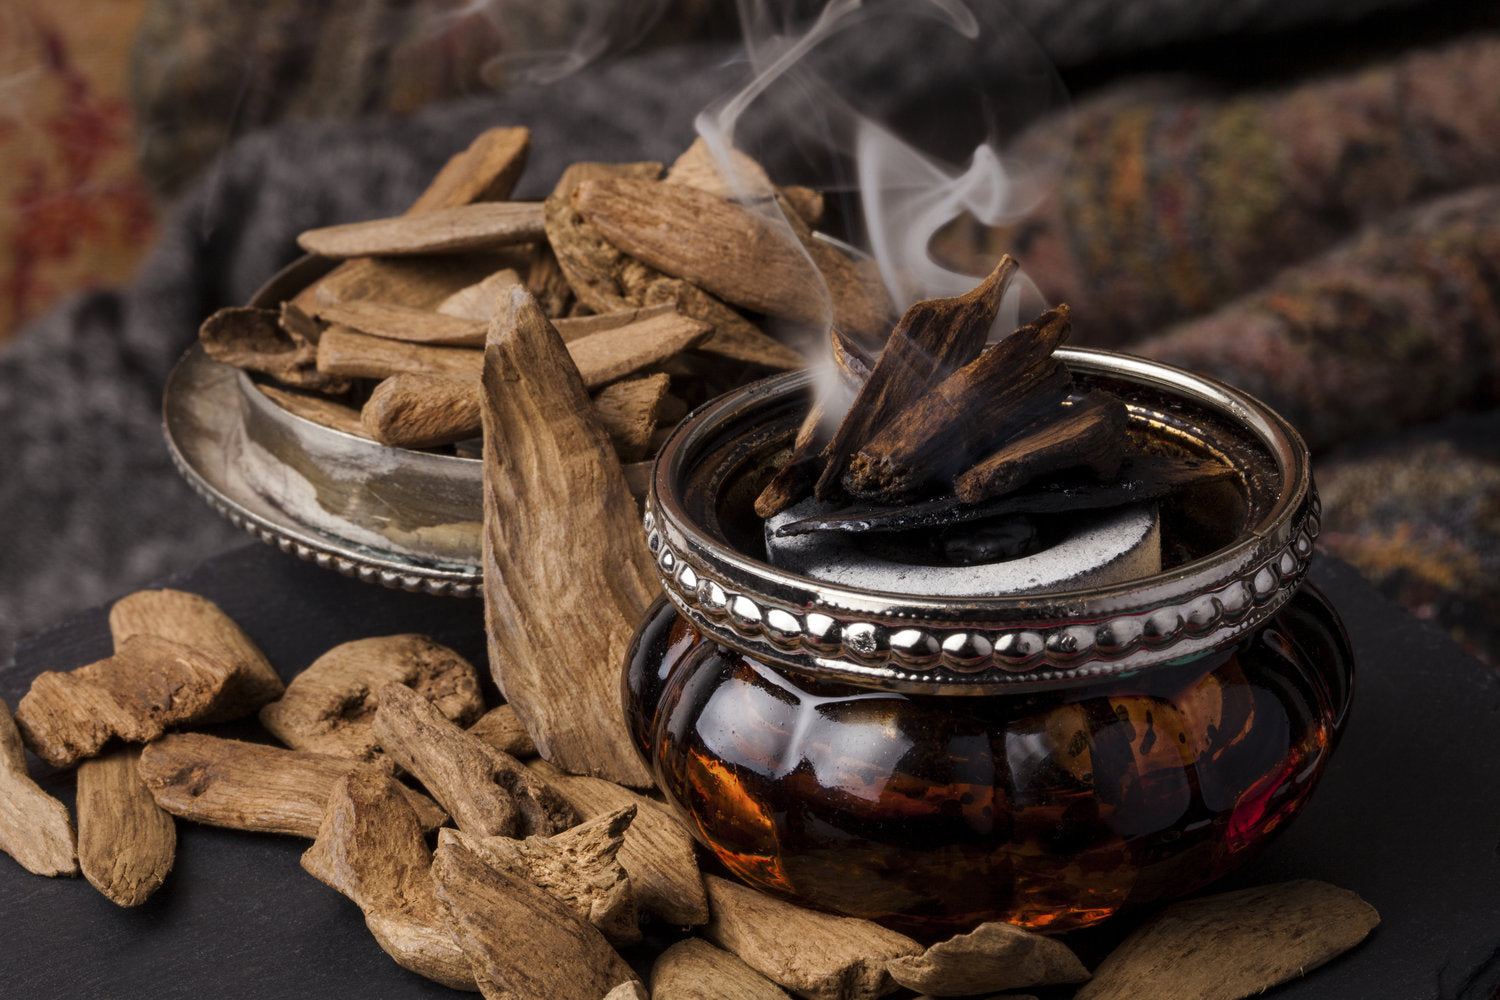 Rare Oud Wood smoking wonderful aromas 